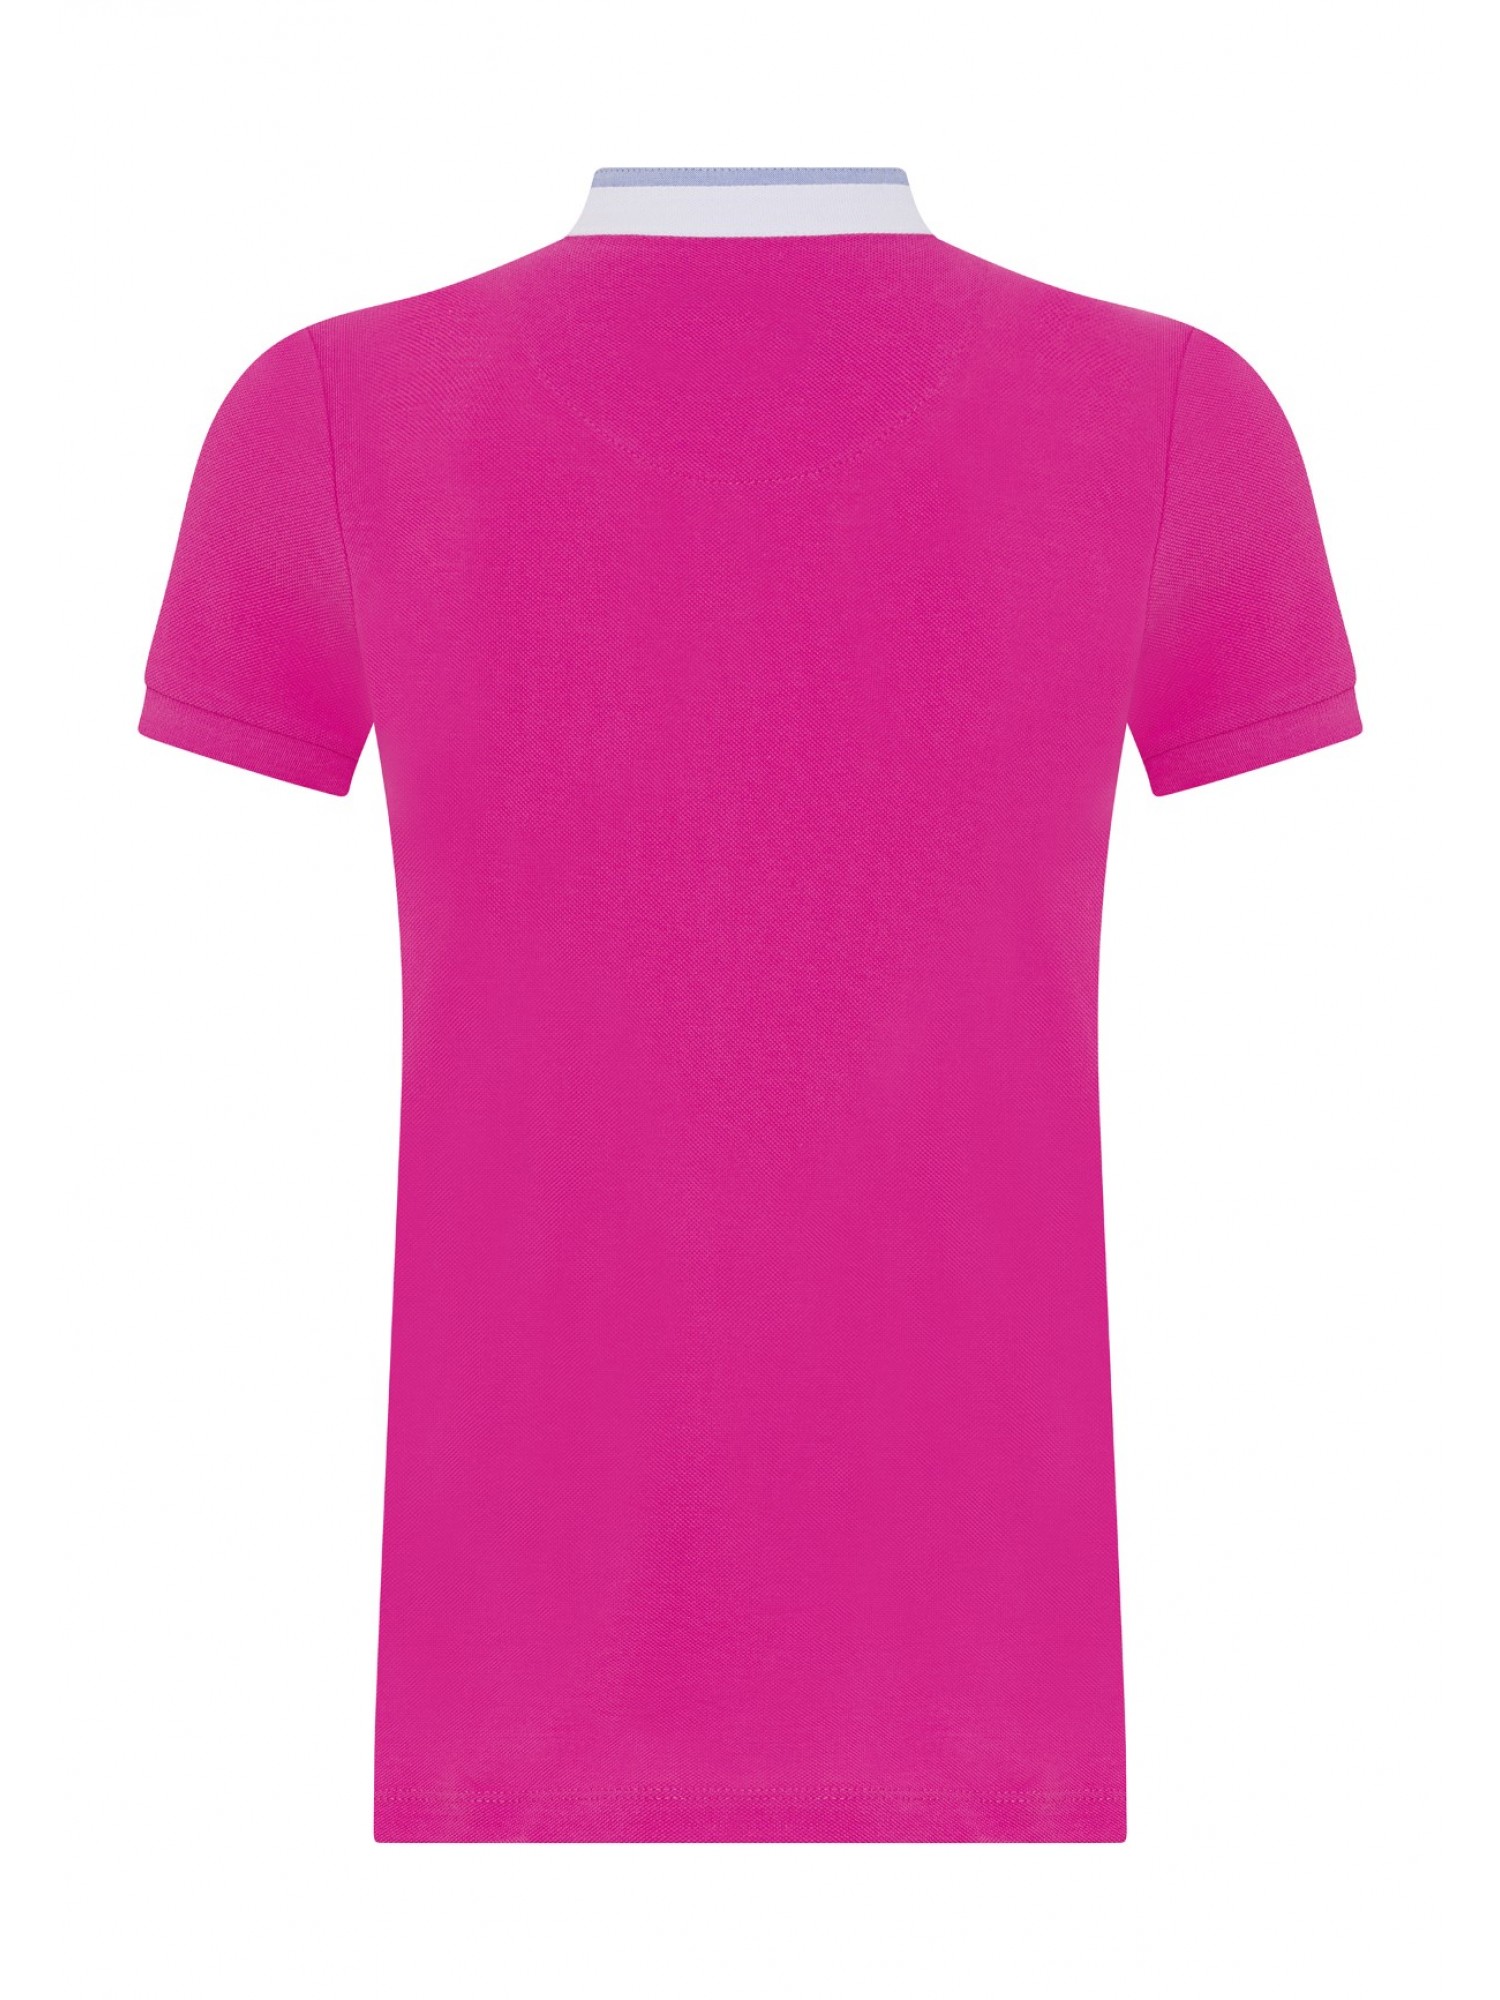 Womens Pique T-Shirt Dunkel Pınk B10565033DP